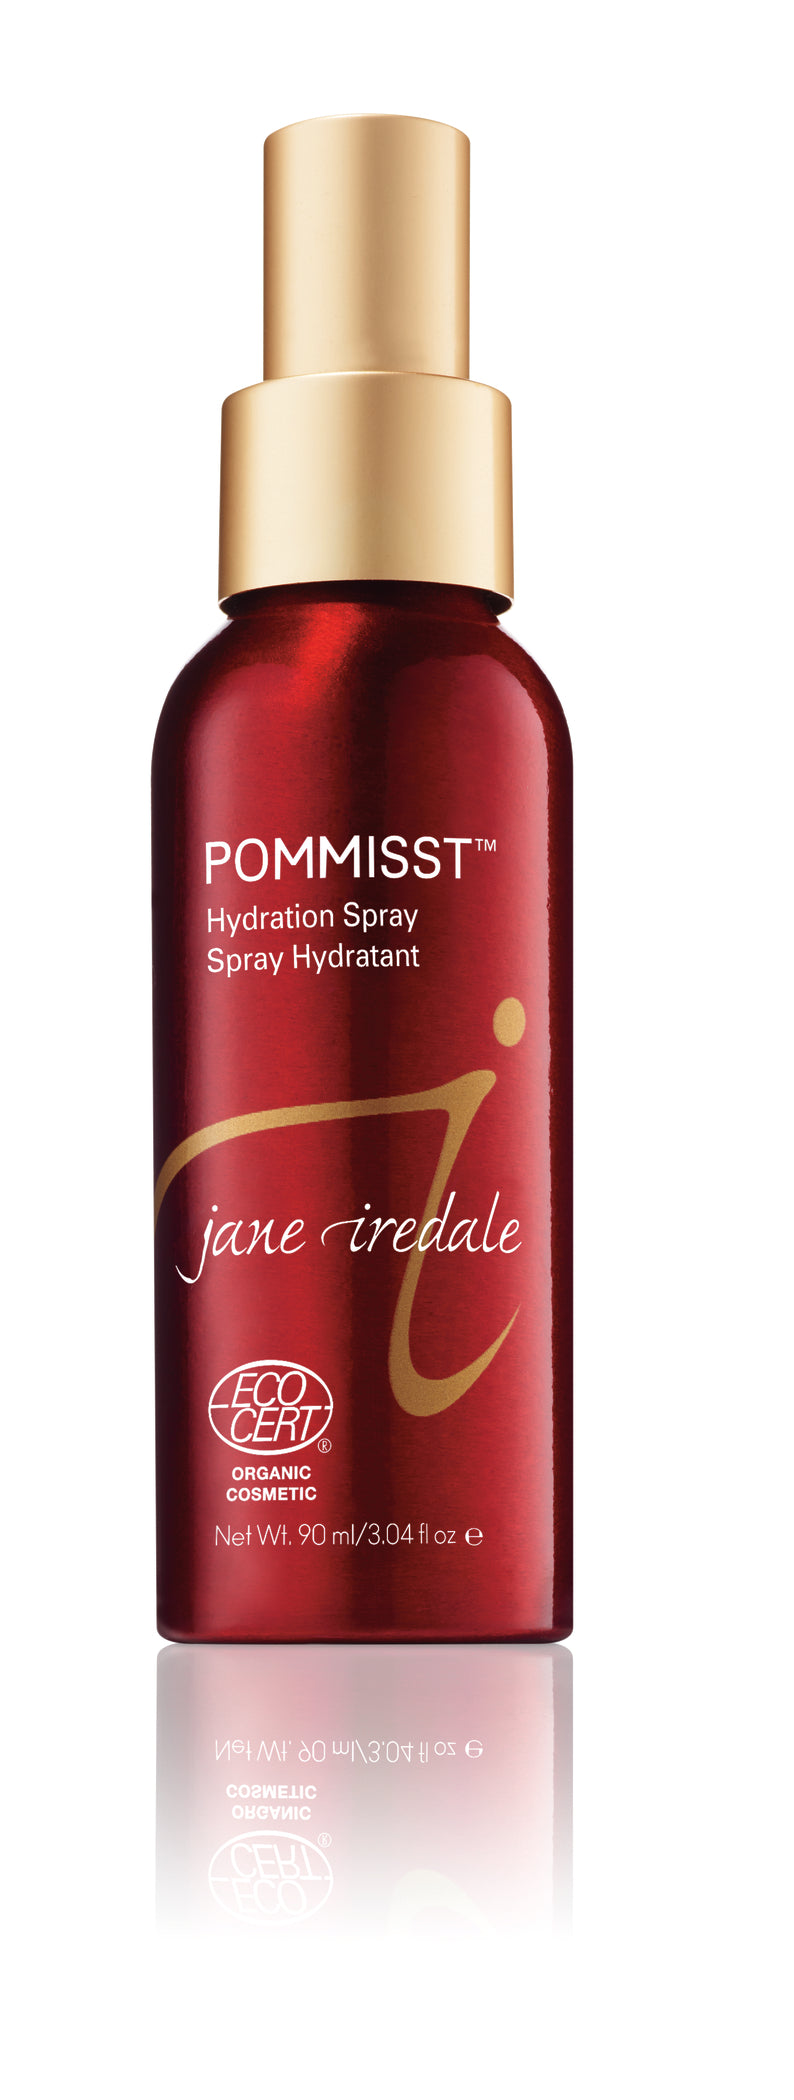 Jane Iredale Hydration Sprays 90ml